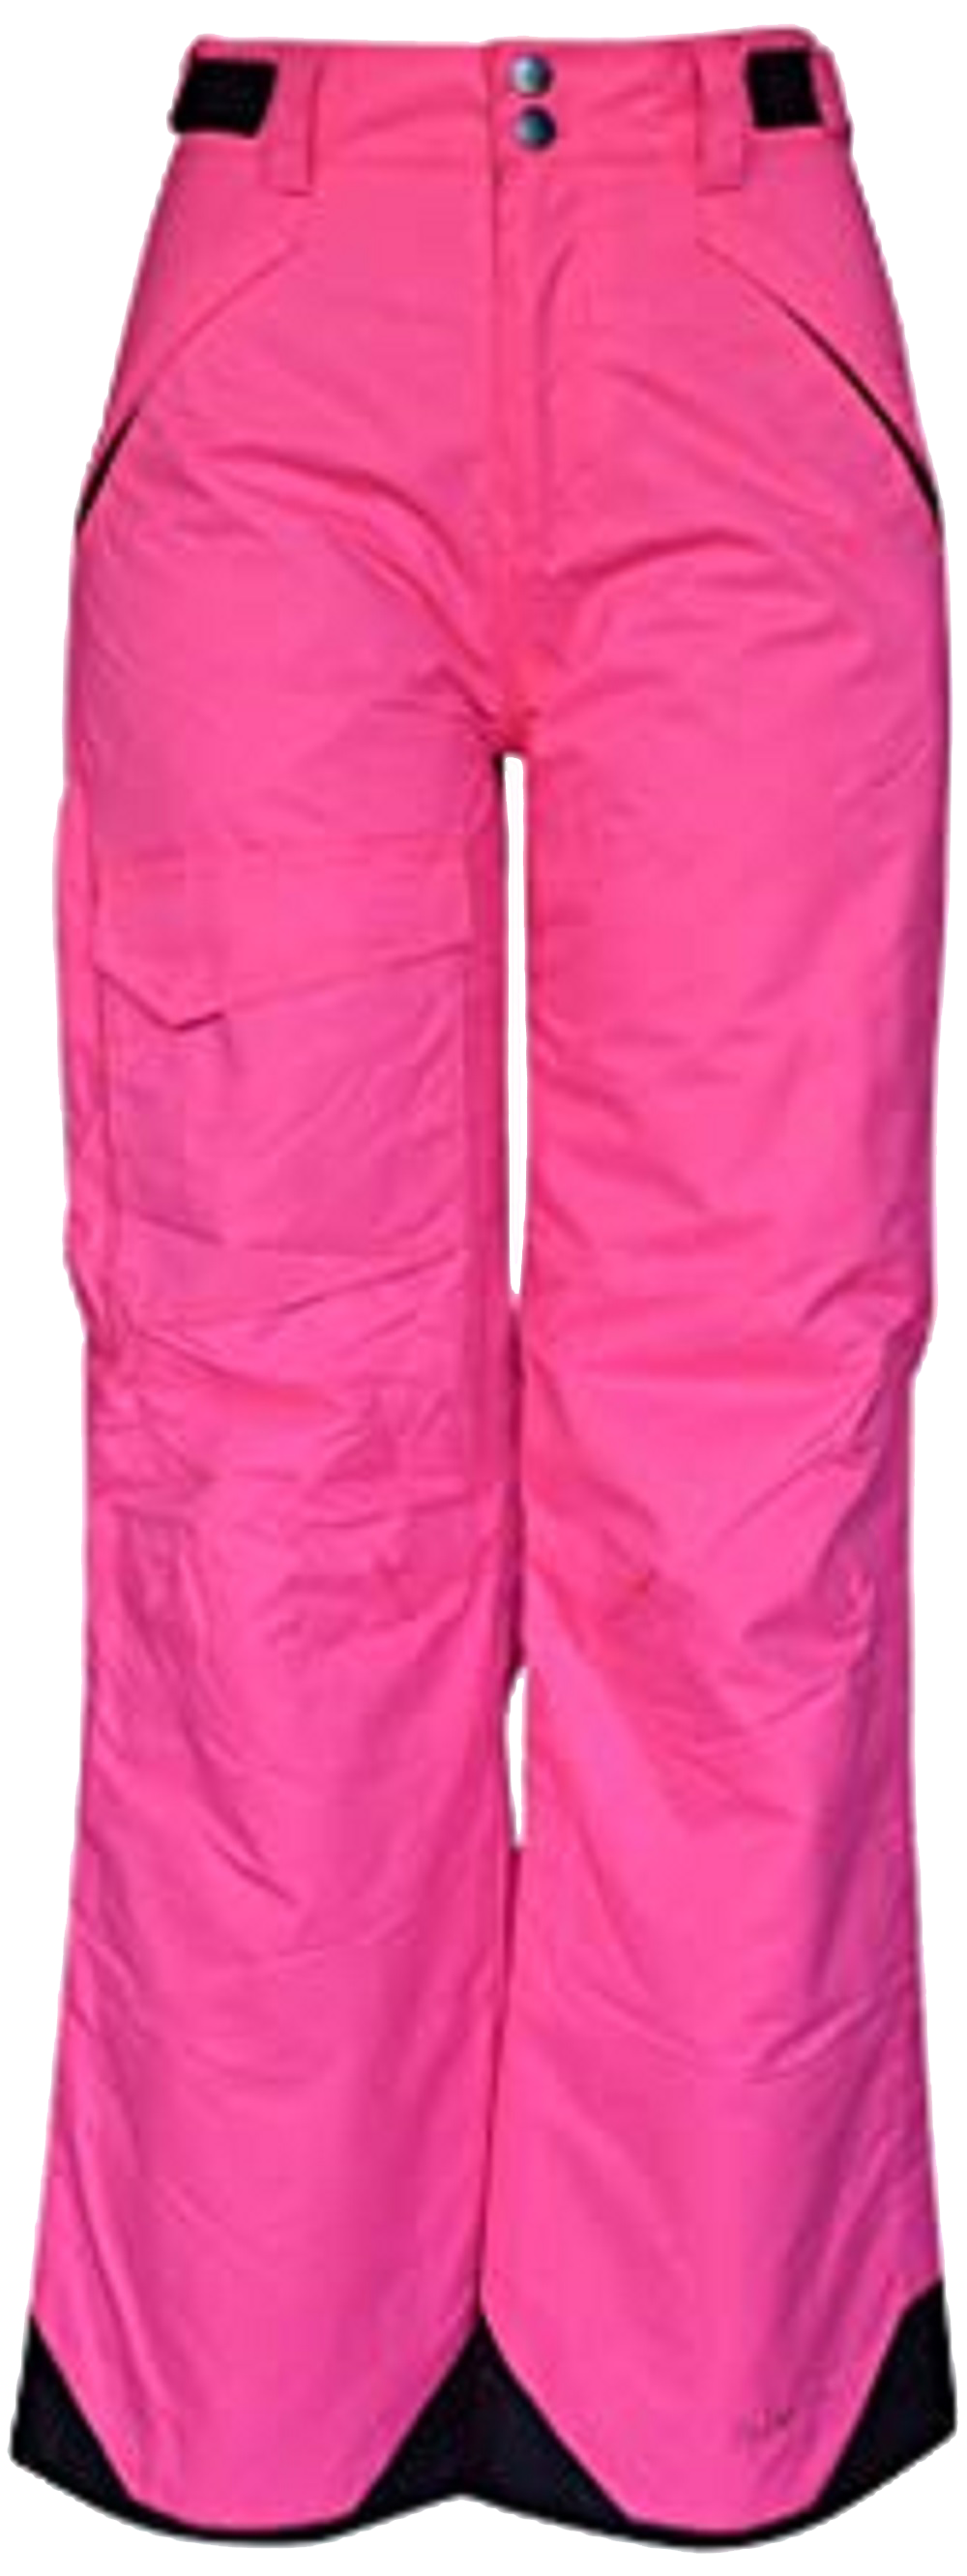 Pink Ski Bib Ski Pants Ski Trousers Warm Pant Snow Pants Winter